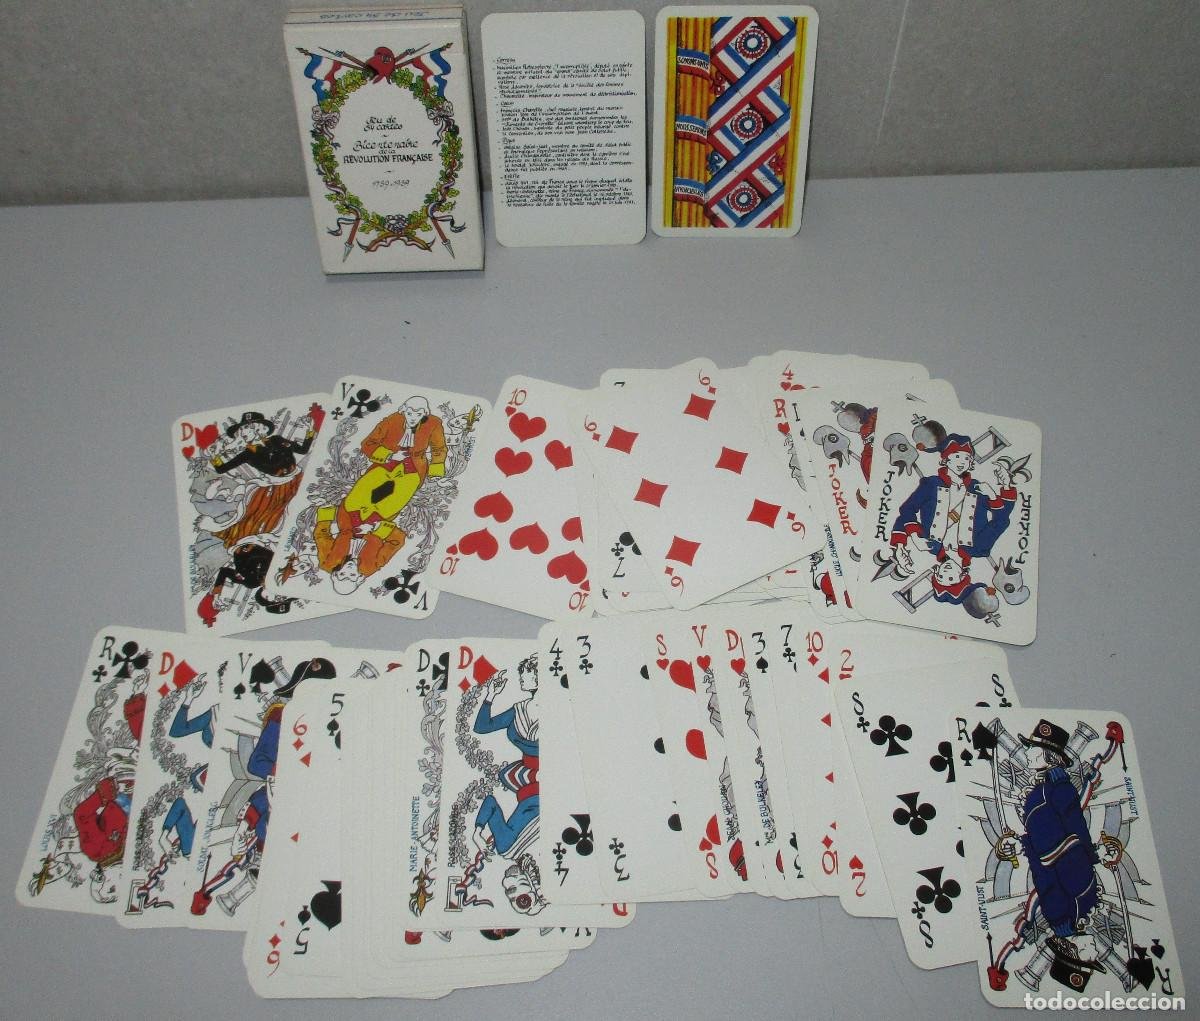 poker!! 32 cartes sexy - piquet belote - 40's - Acheter Jeux de cartes de  poker sur todocoleccion